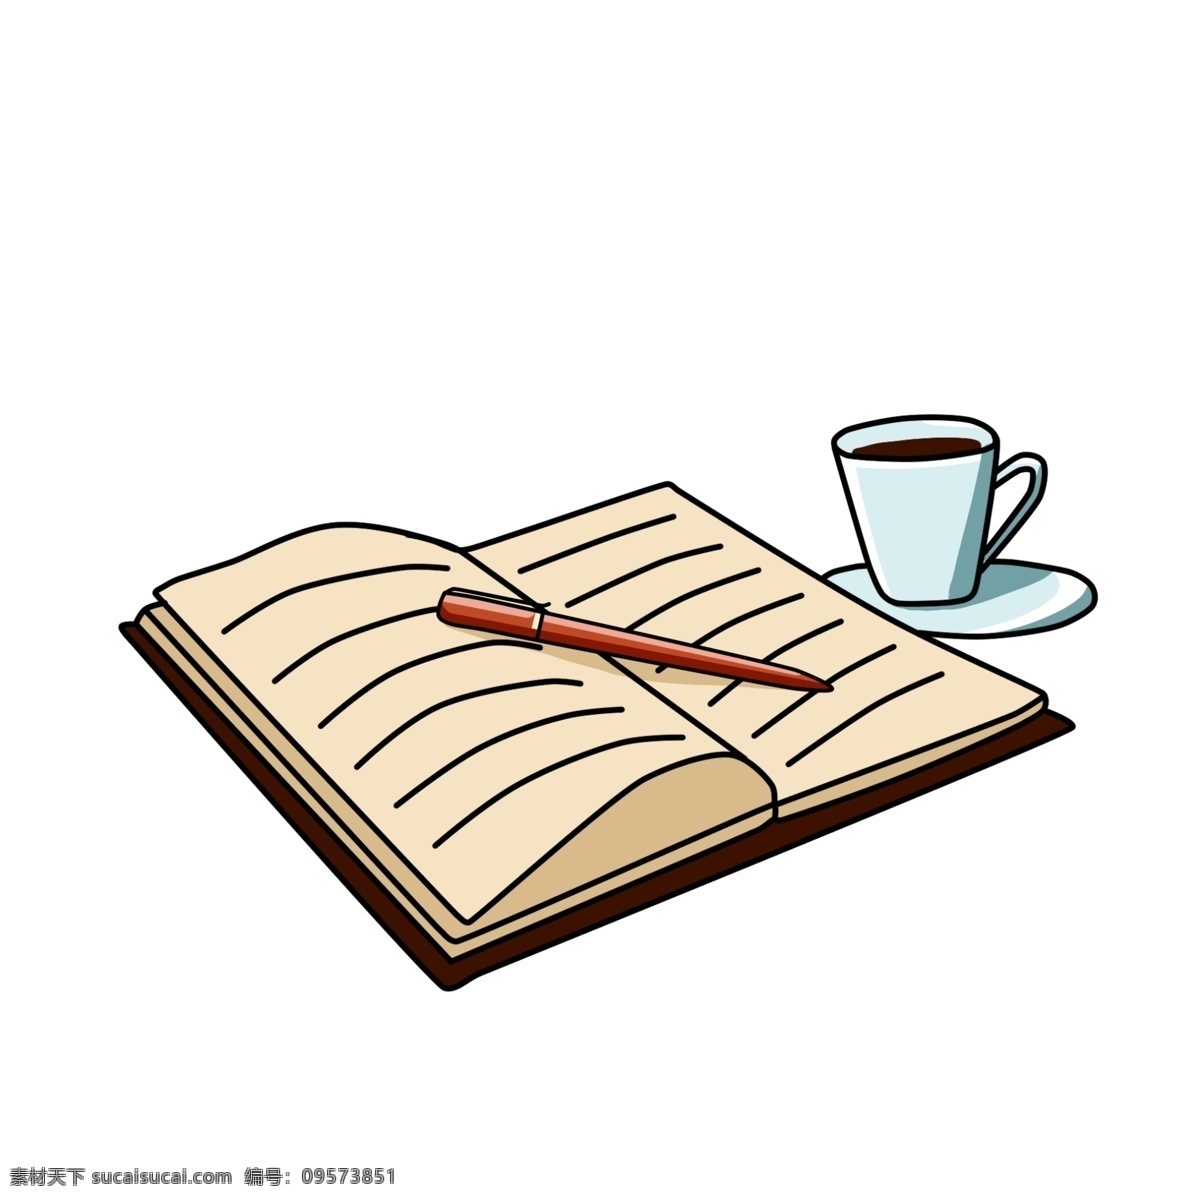 打开 书籍 学习 插画 书本 卡通书籍插画 图书 蓝色的茶杯 精美的书籍 打开的书籍 学习知识插画